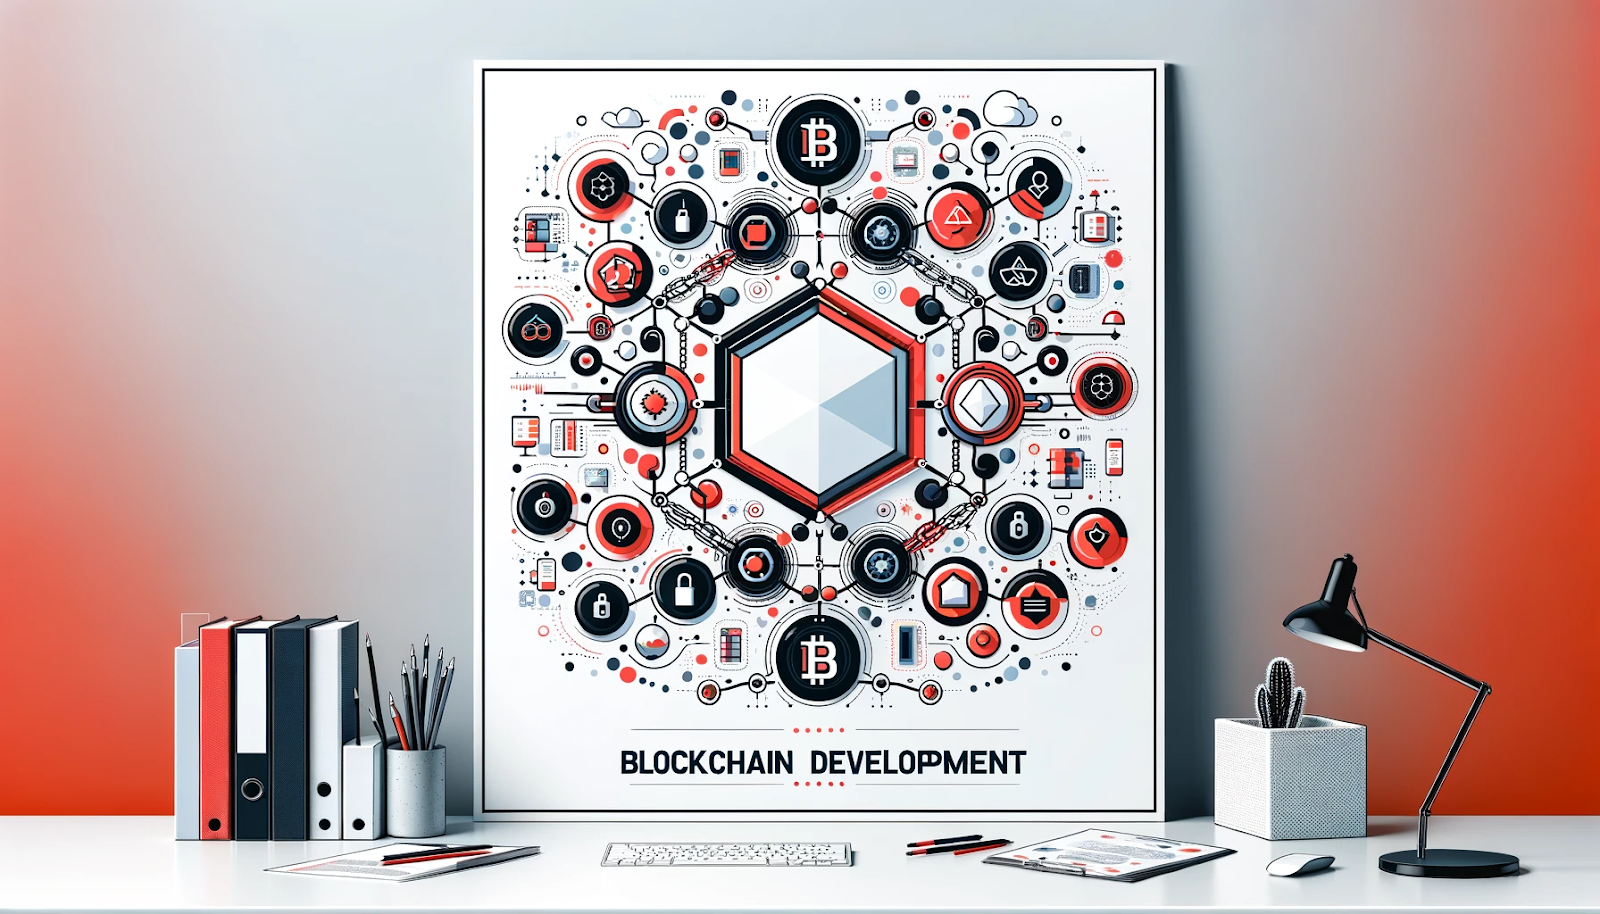 Blockchain Development is Redefining Our World